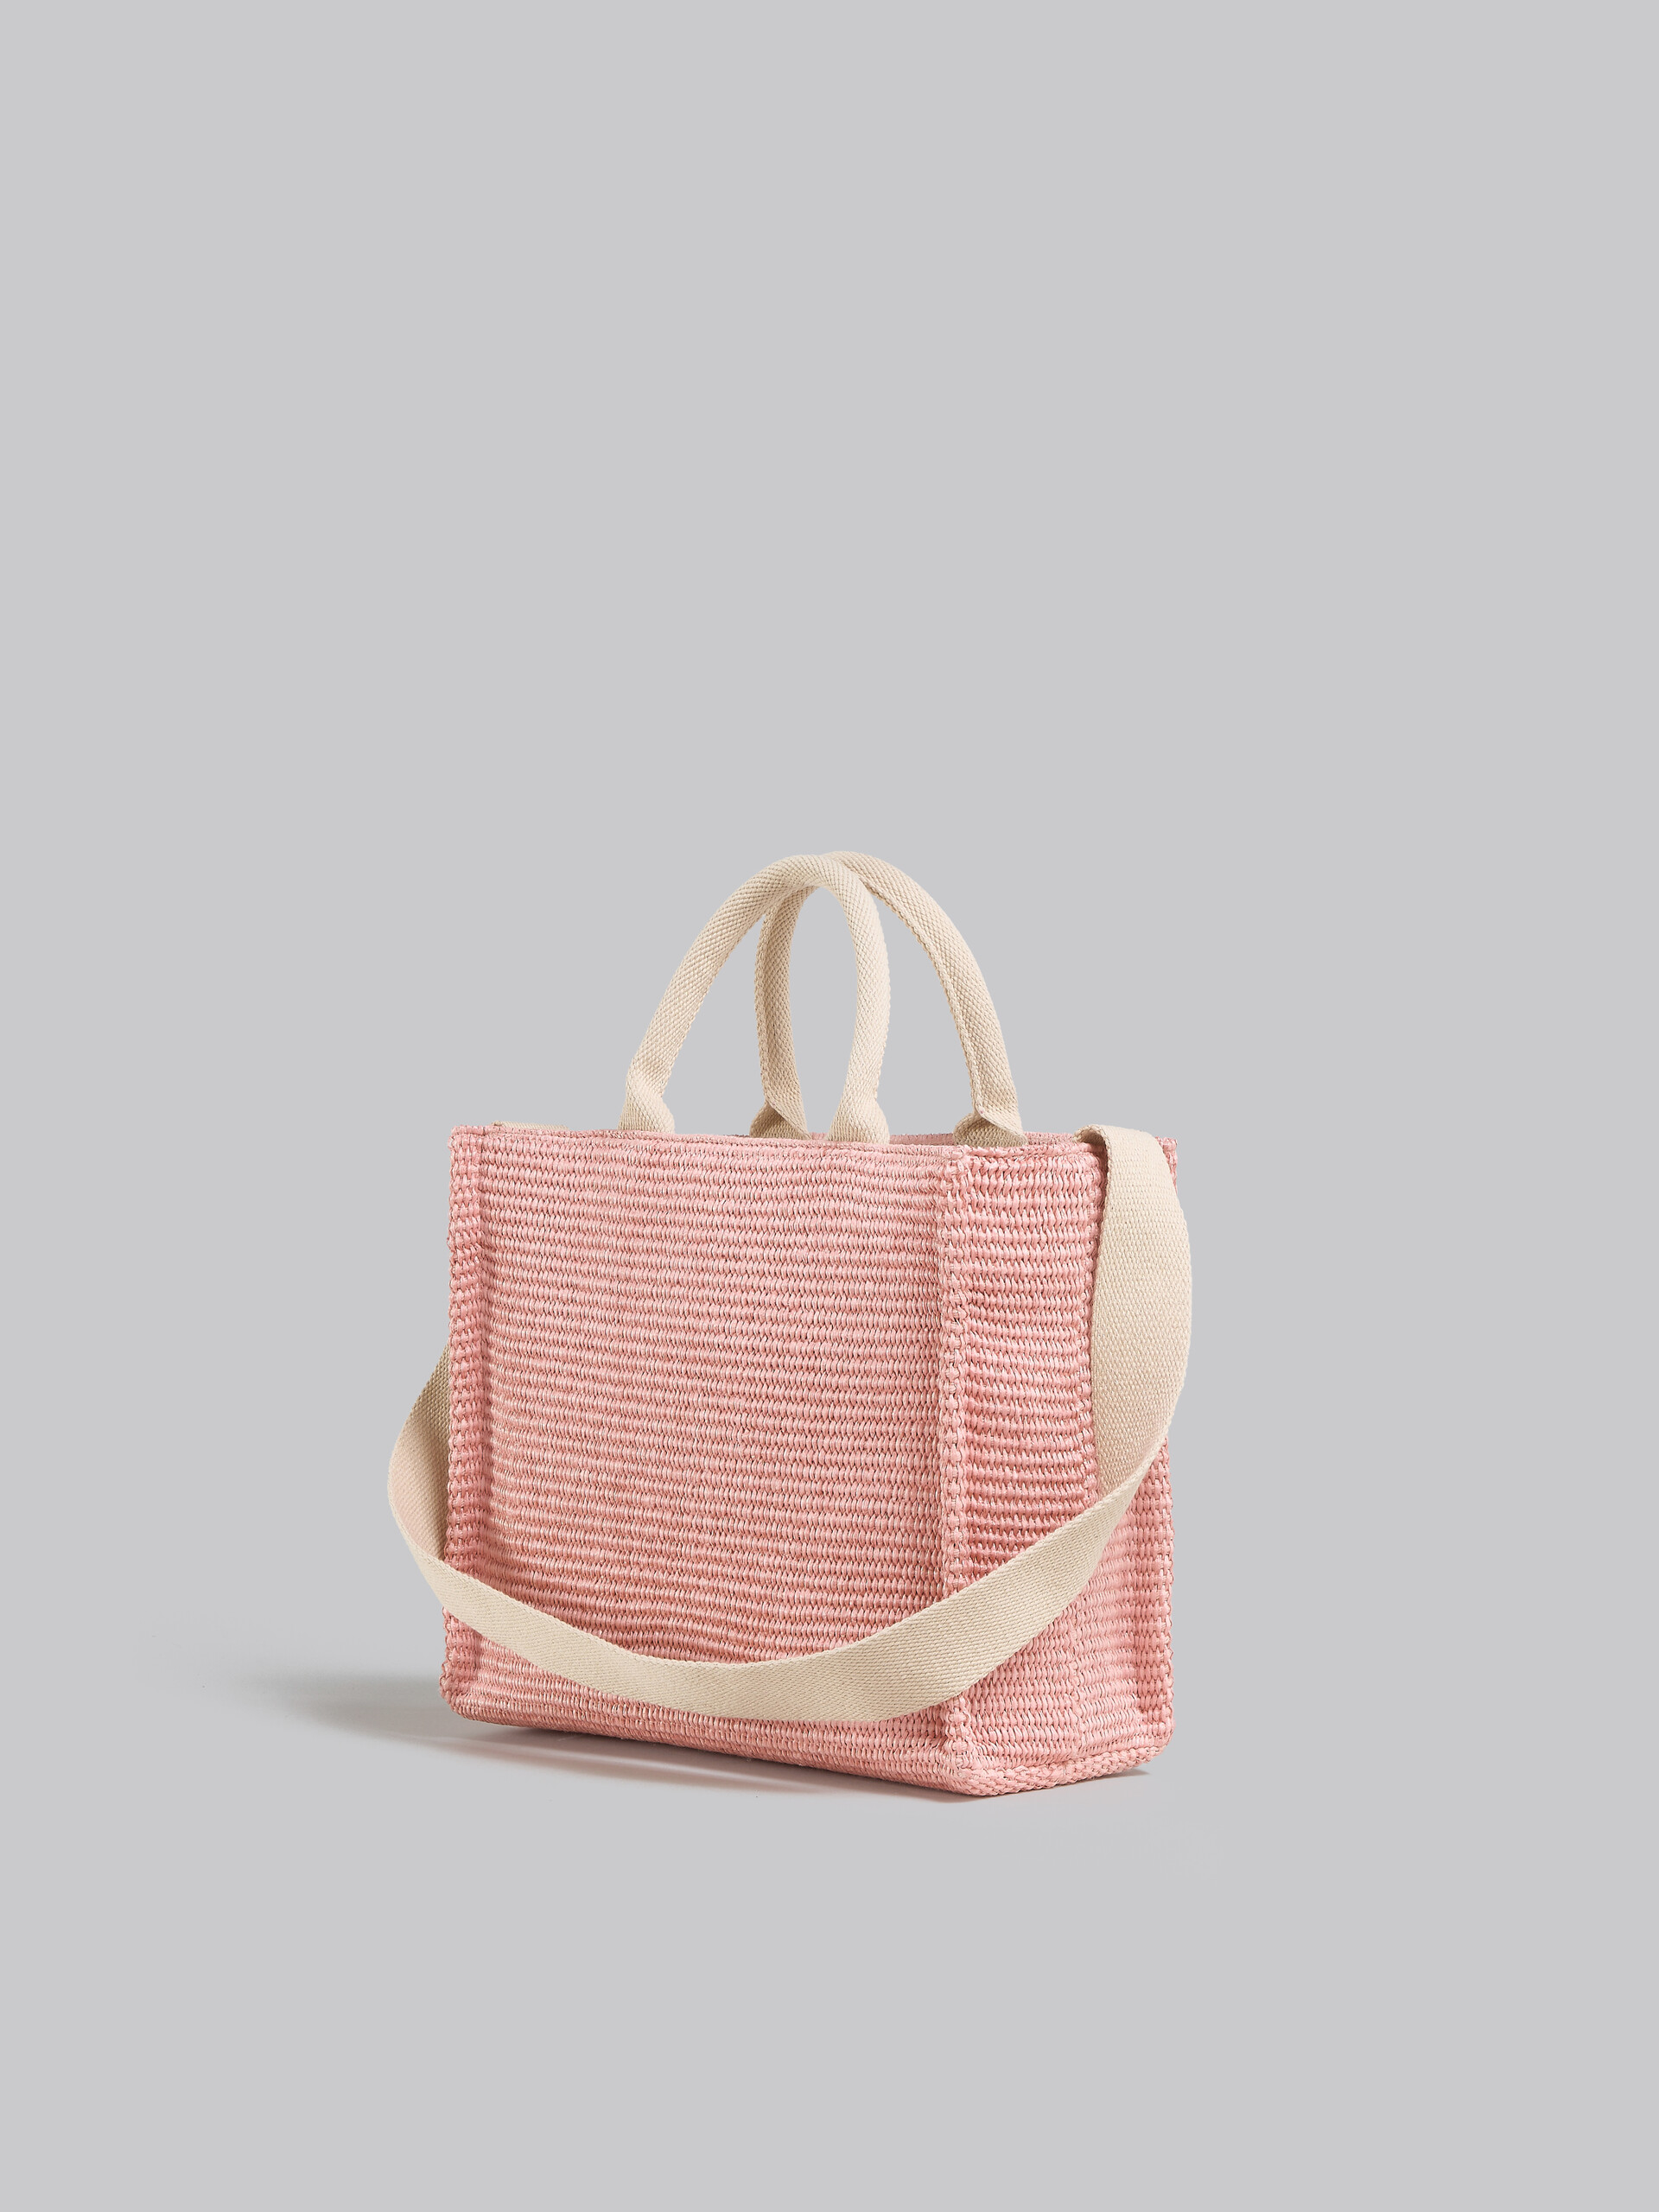 Tote Bag Piccola in tessuto effetto rafia lilla - Borse shopping - Image 3